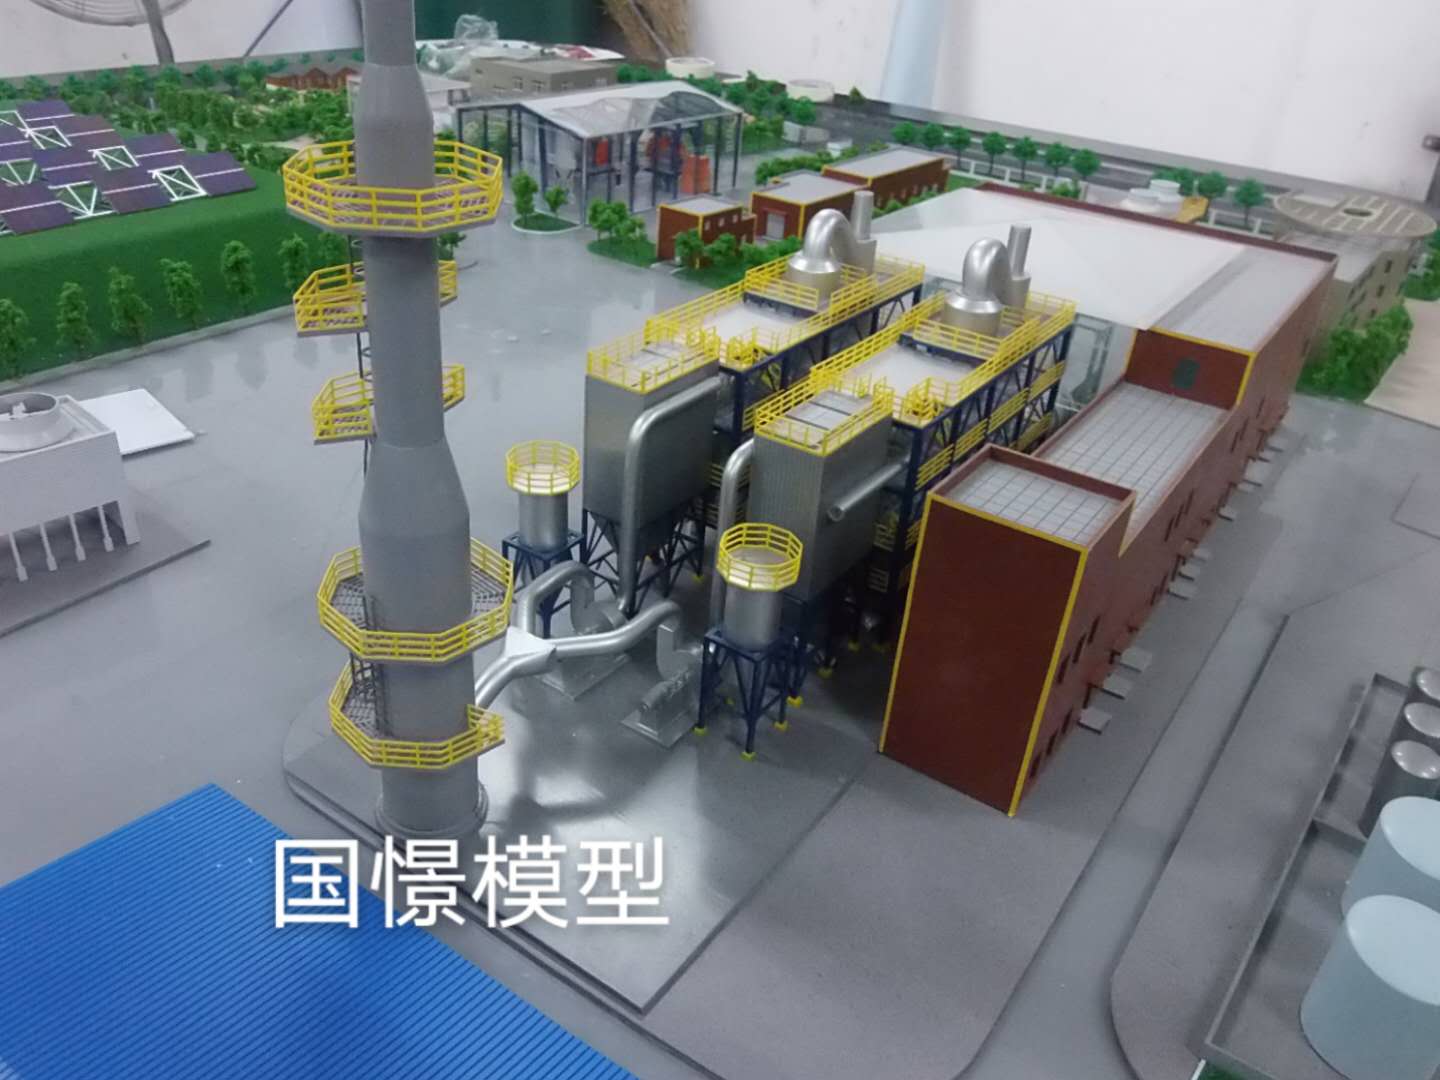 重庆工业模型